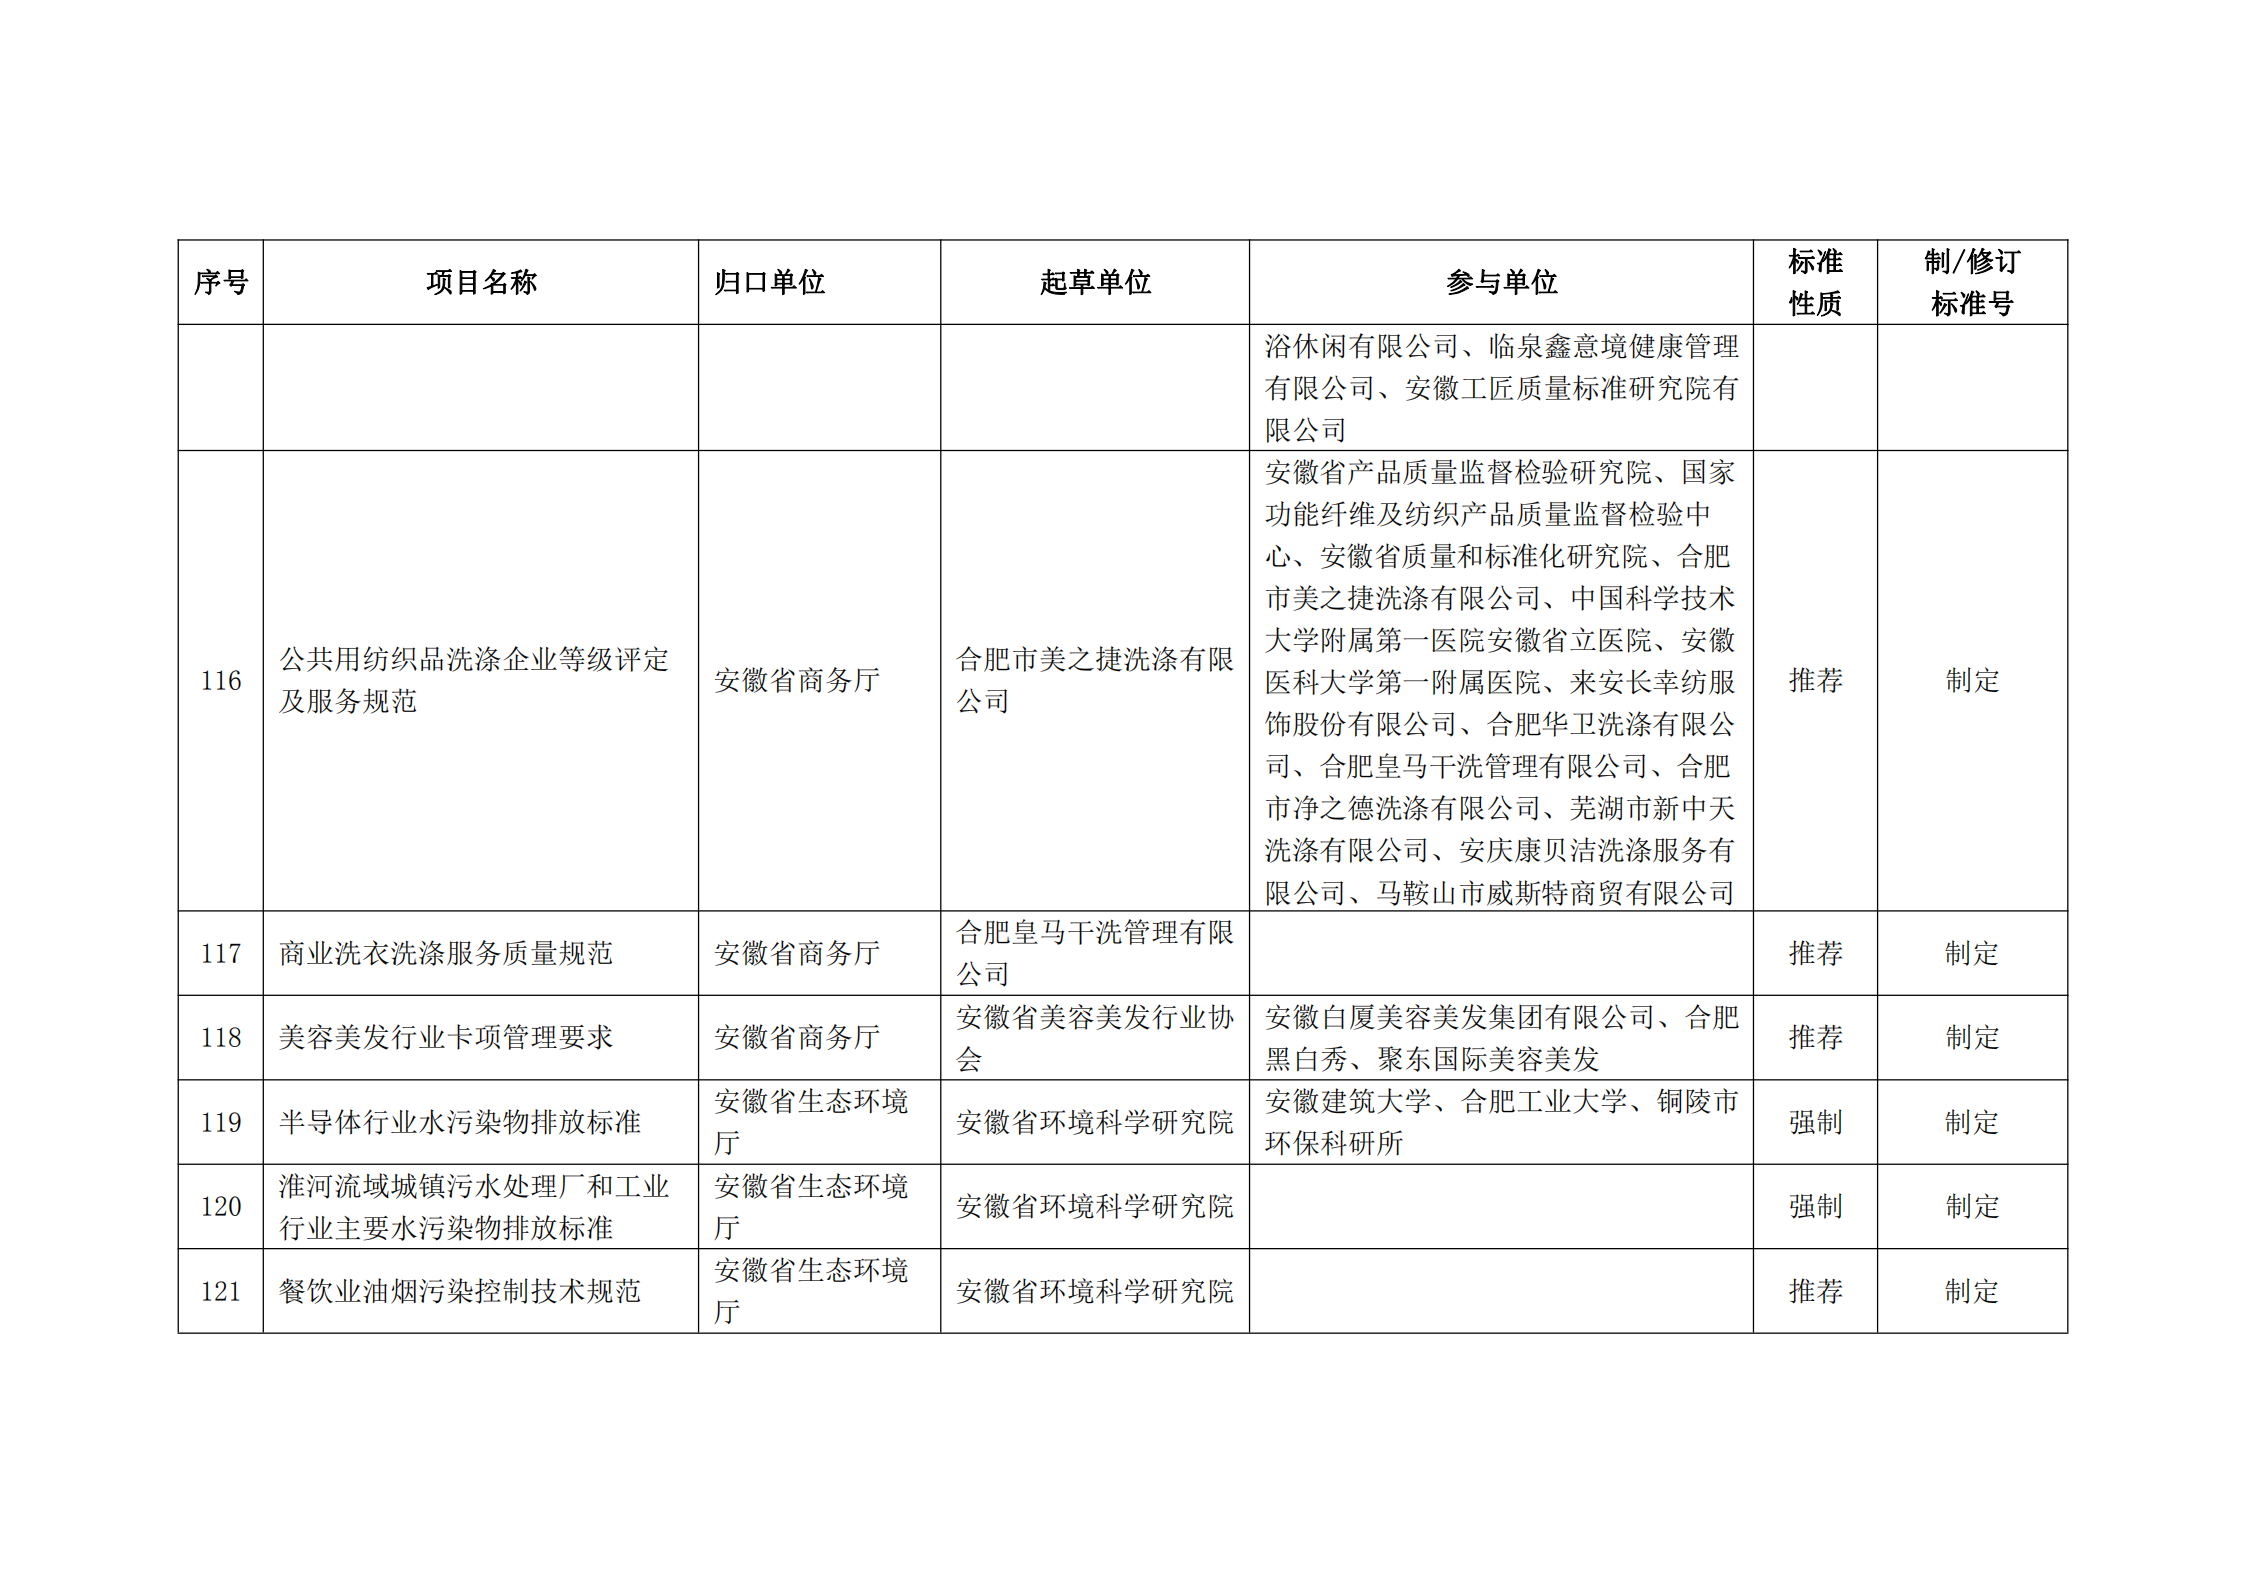 2020 年第二批安徽省地方标准制、修订计划项目汇总表(图14)